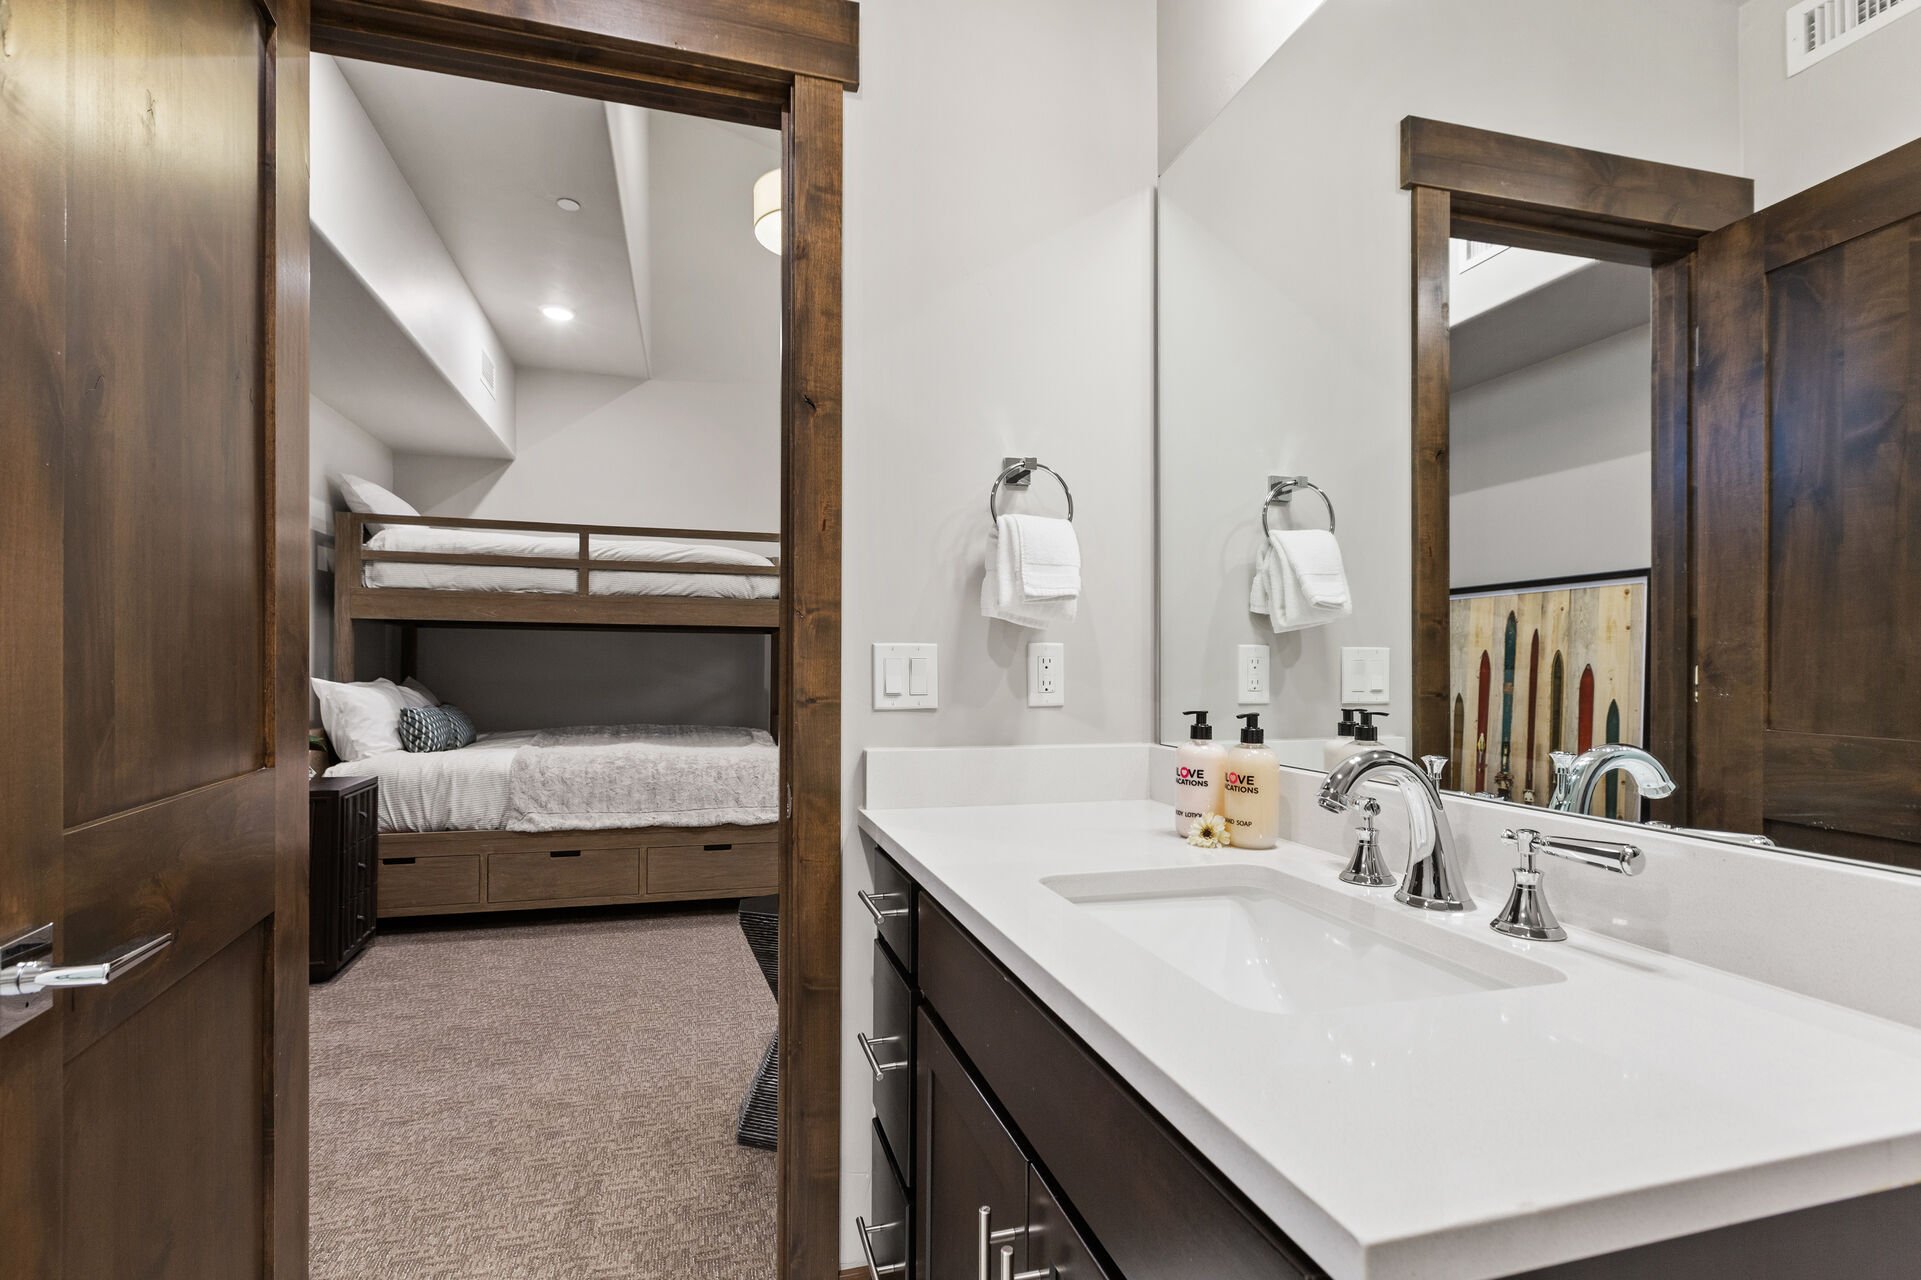 Bedroom 3 Twin over Queen bunk bed with Queen-sized sleeper sofa, and en suite bathroom with shower